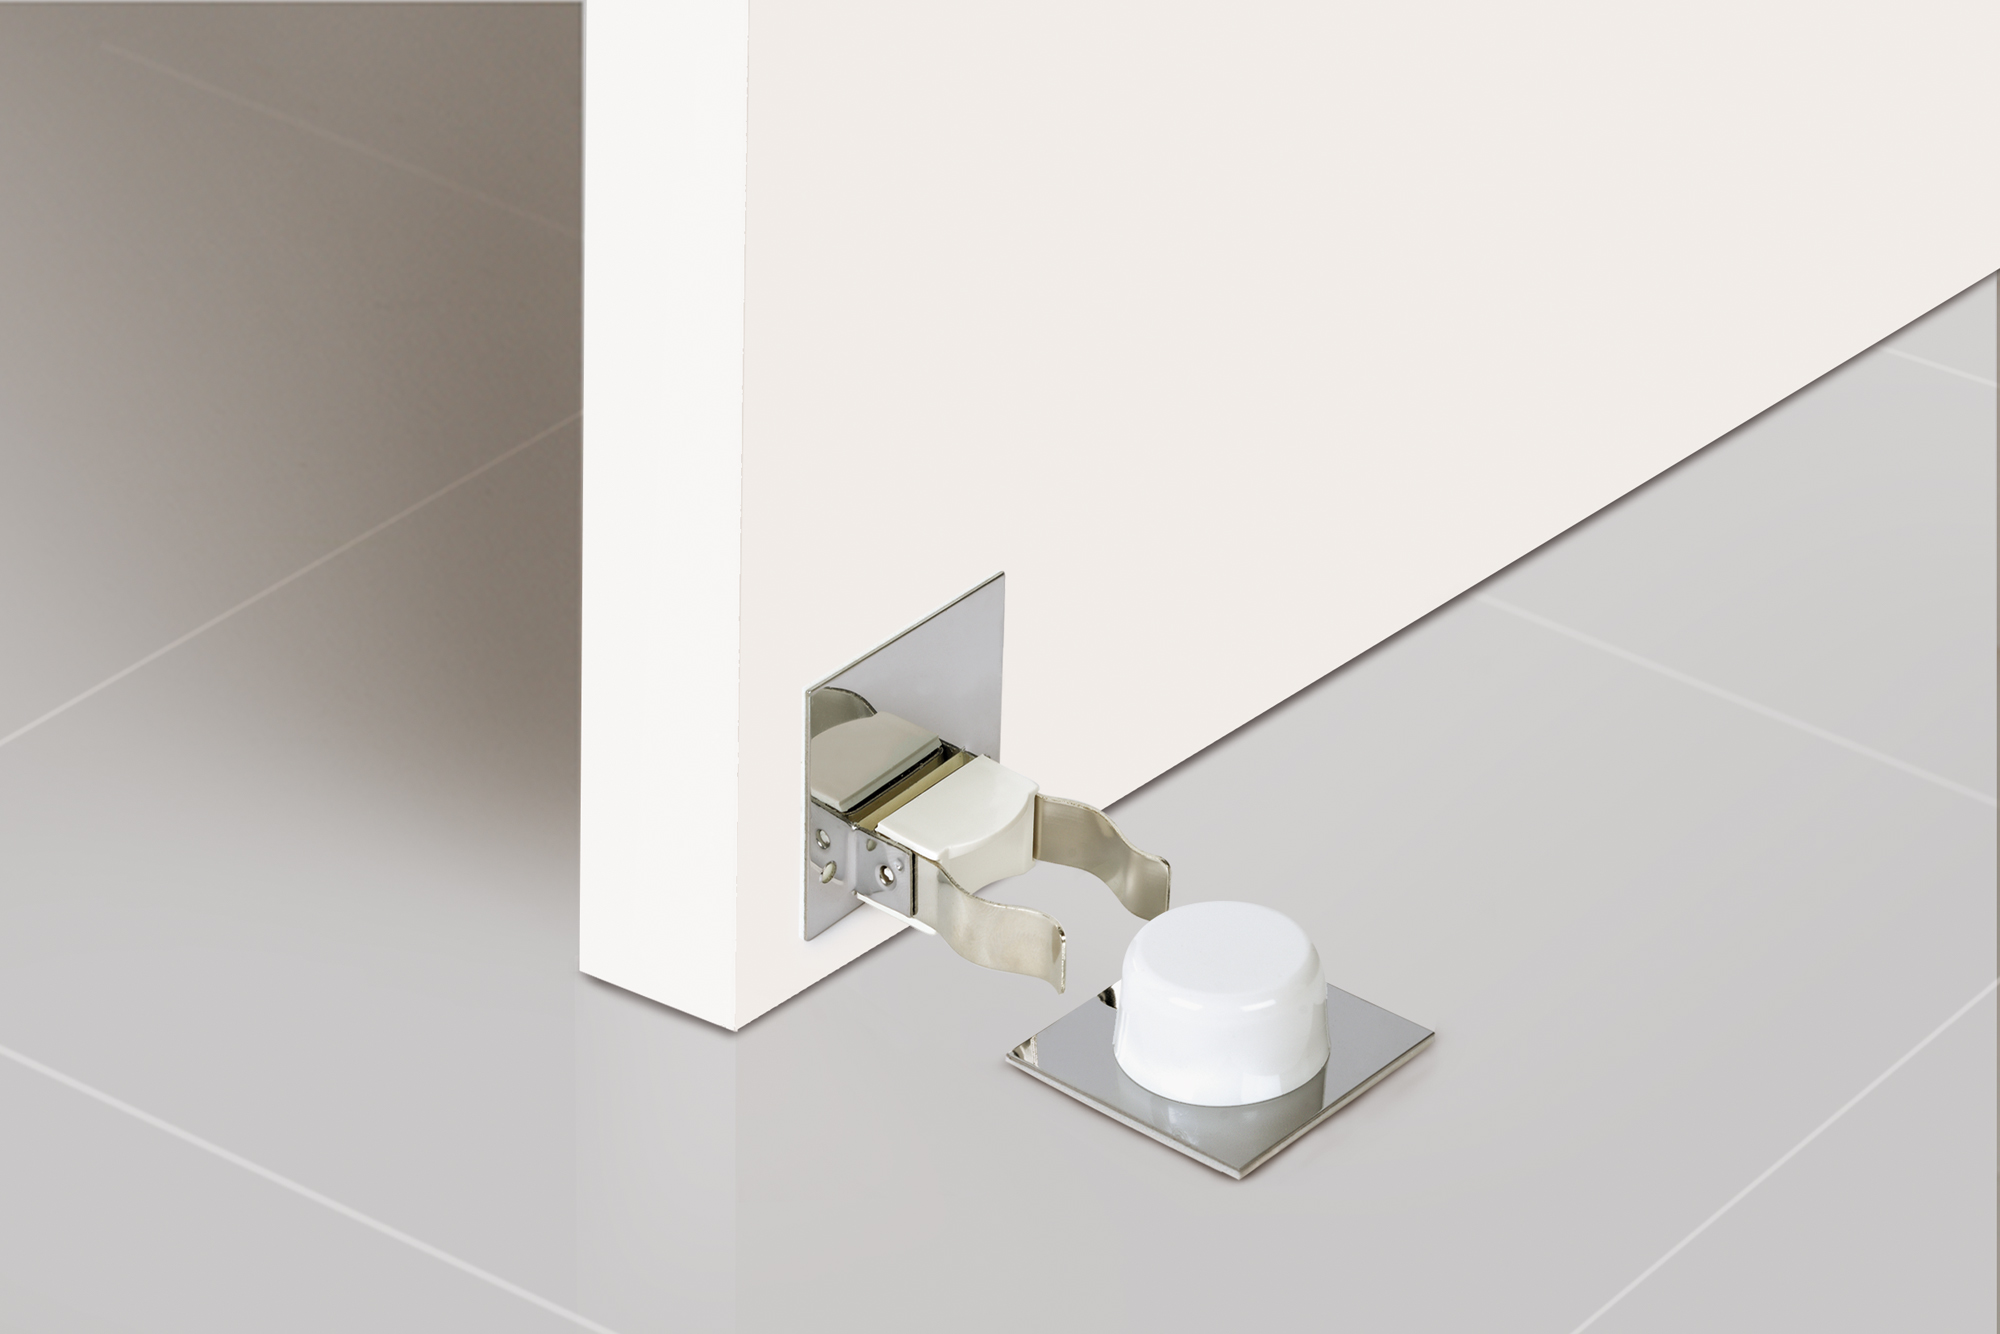 Retenedor de puerta con sujeción adhesivo con acabado blanco. Dimensiones: 45x60x46 mm - Ítem1